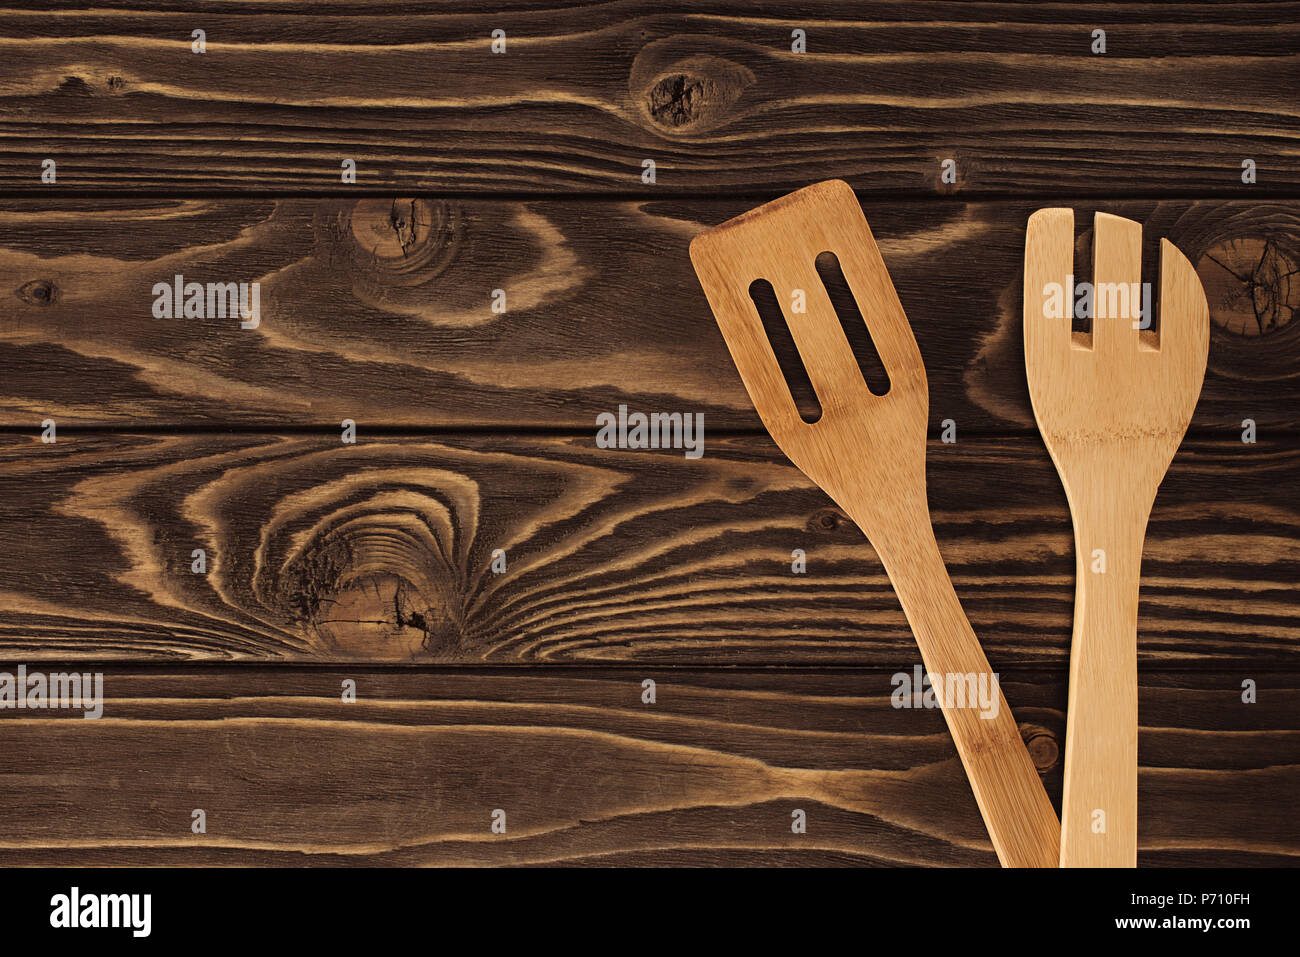 Portrait de deux spatules en bois sur la table Banque D'Images